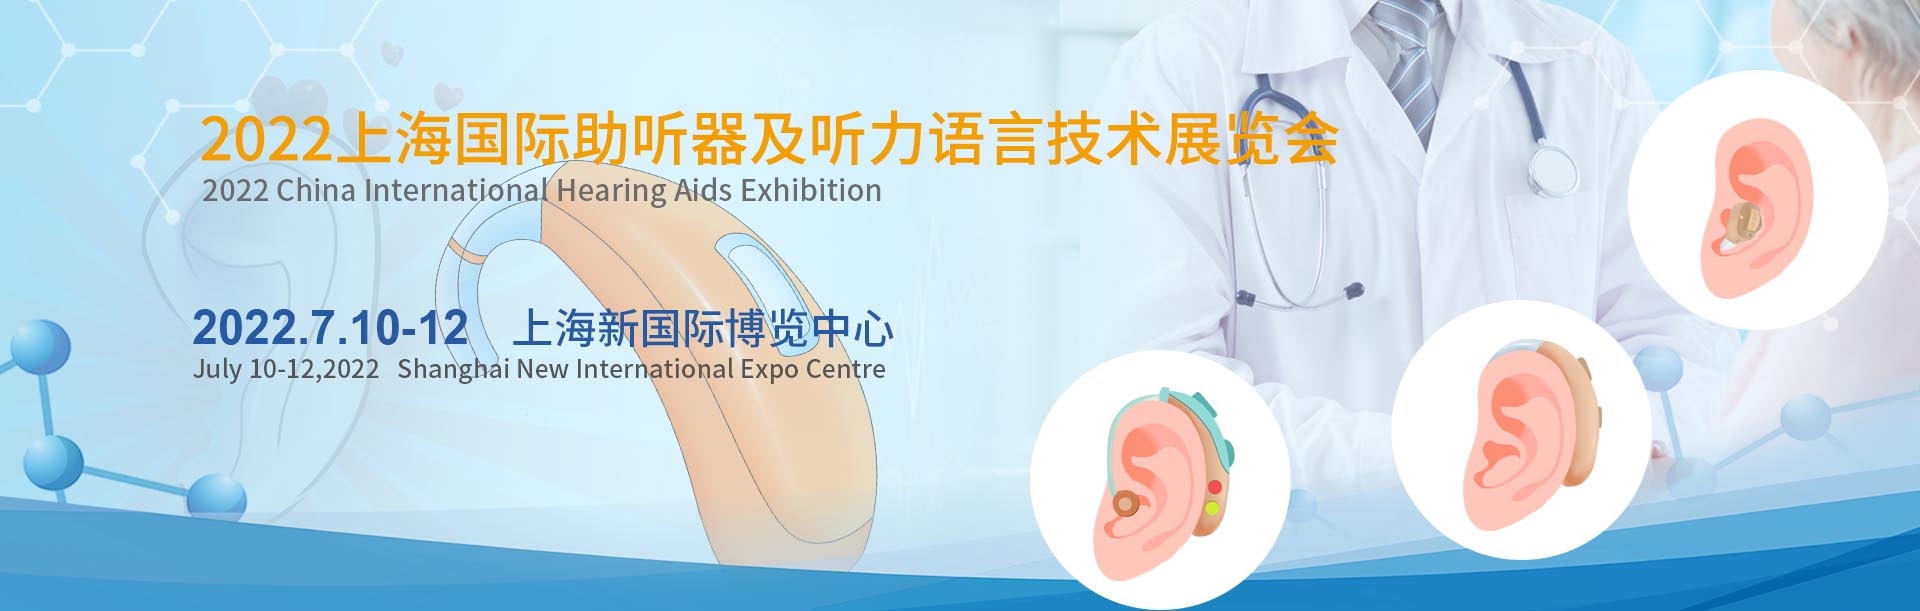 2022上海国际助听器及听力语言技术展览会